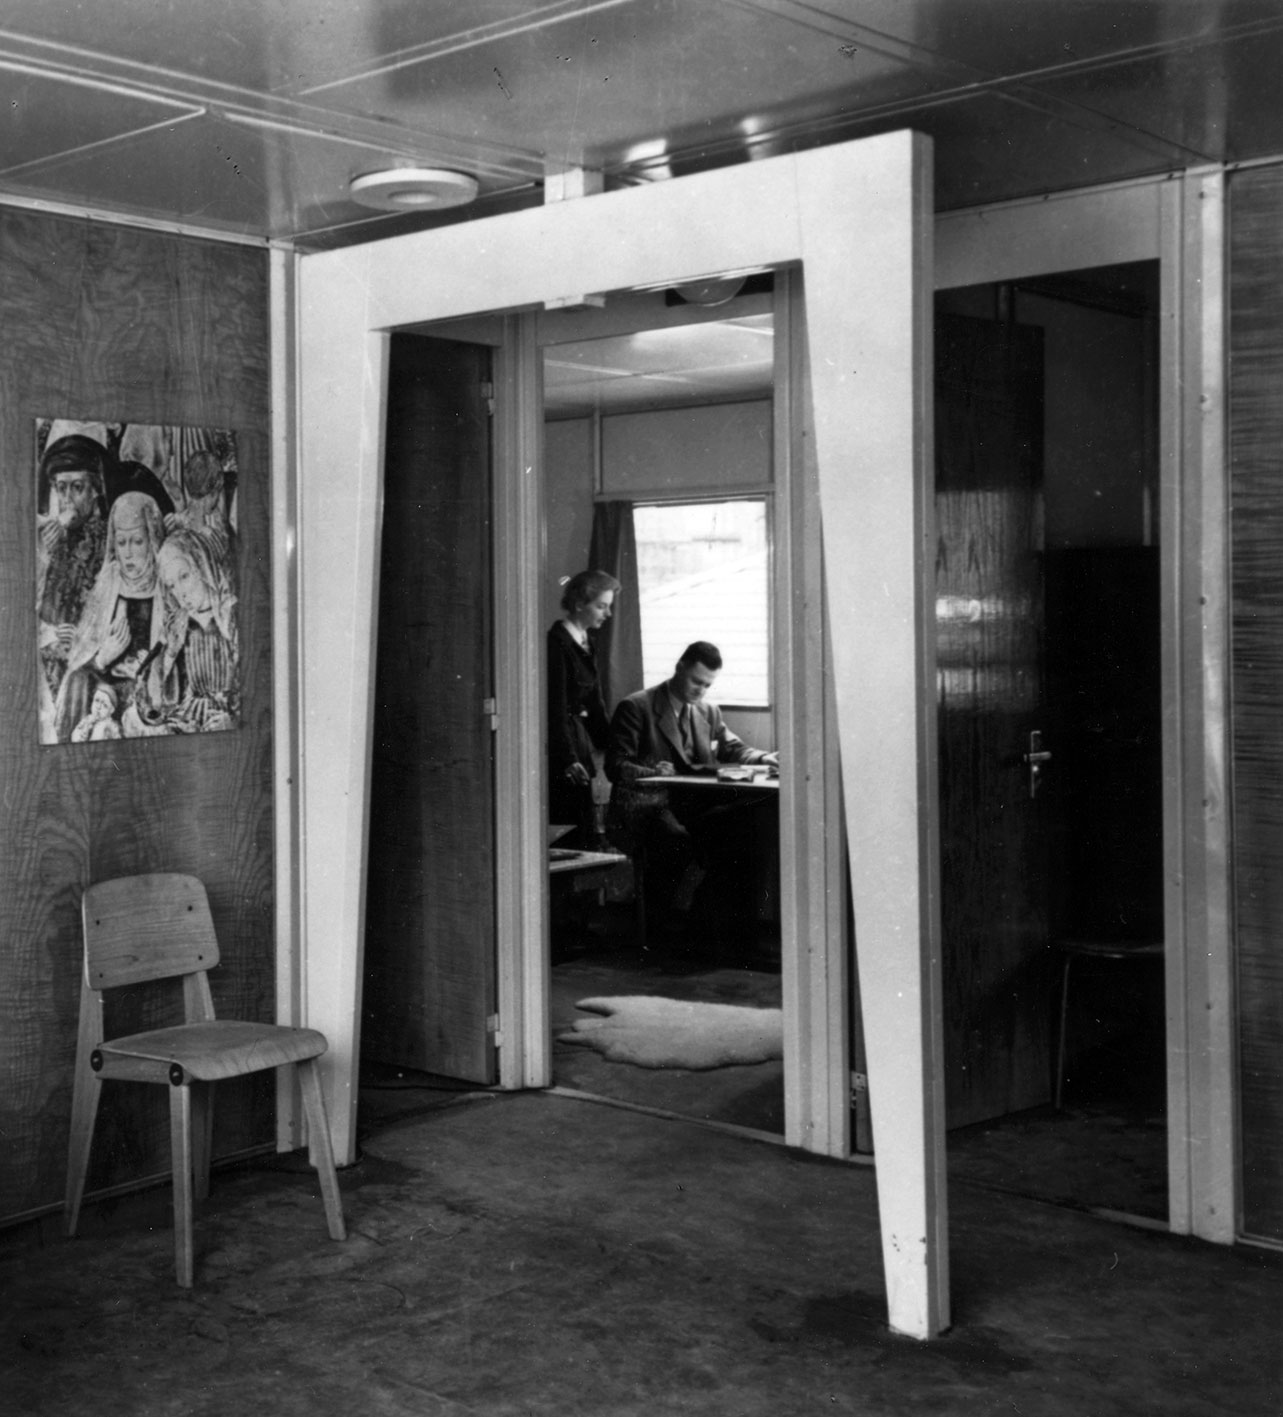 Prototype de maison Métropole monté à l’exposition de l’Habitation, Salon des arts ménagers, Paris, 1950 (H. Prouvé, arch.). Vue intérieure avec une chaise bois démontable n° 301.